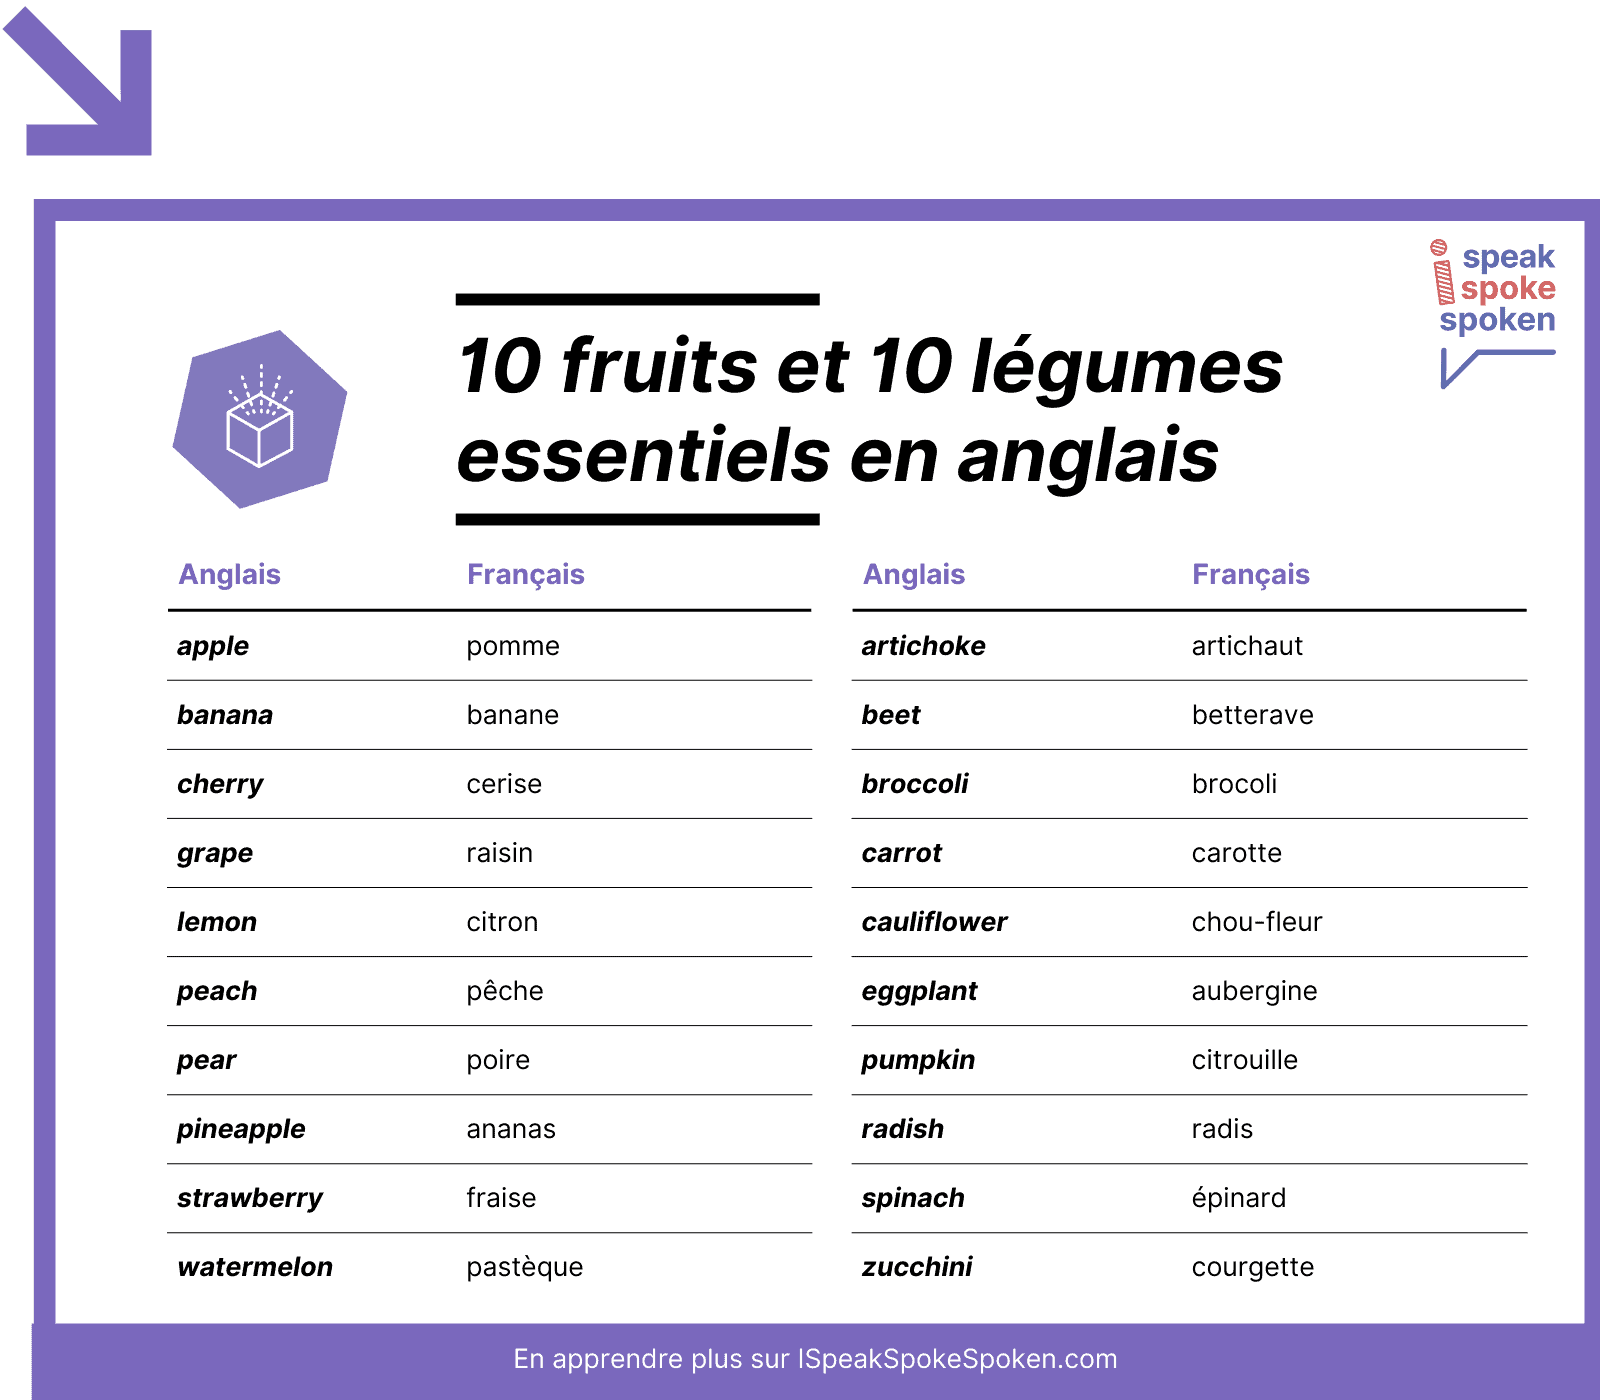 20 mots de vocabulaire anglais essentiels liés aux fruits et légumes